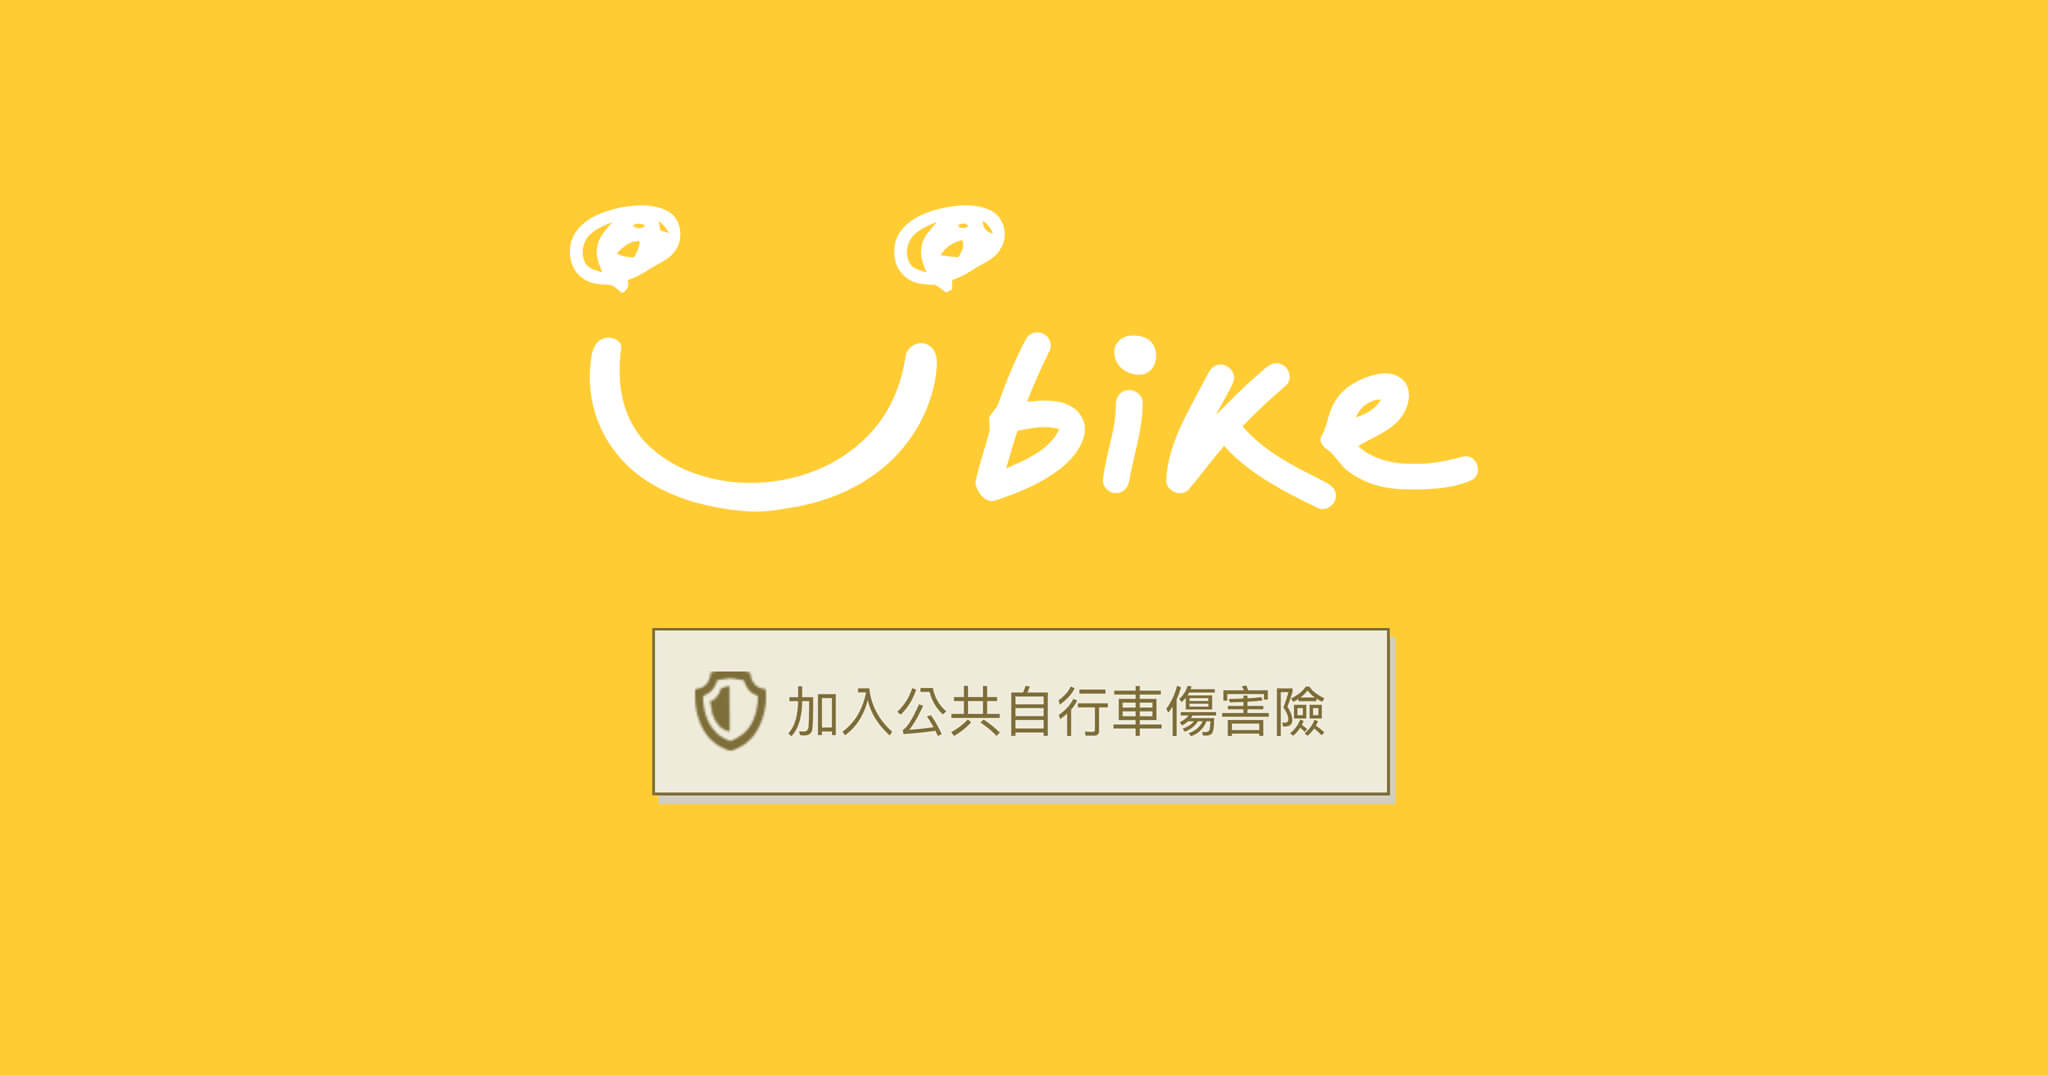 「教學」三分鐘免費申請 YouBike 公共自行車傷害險